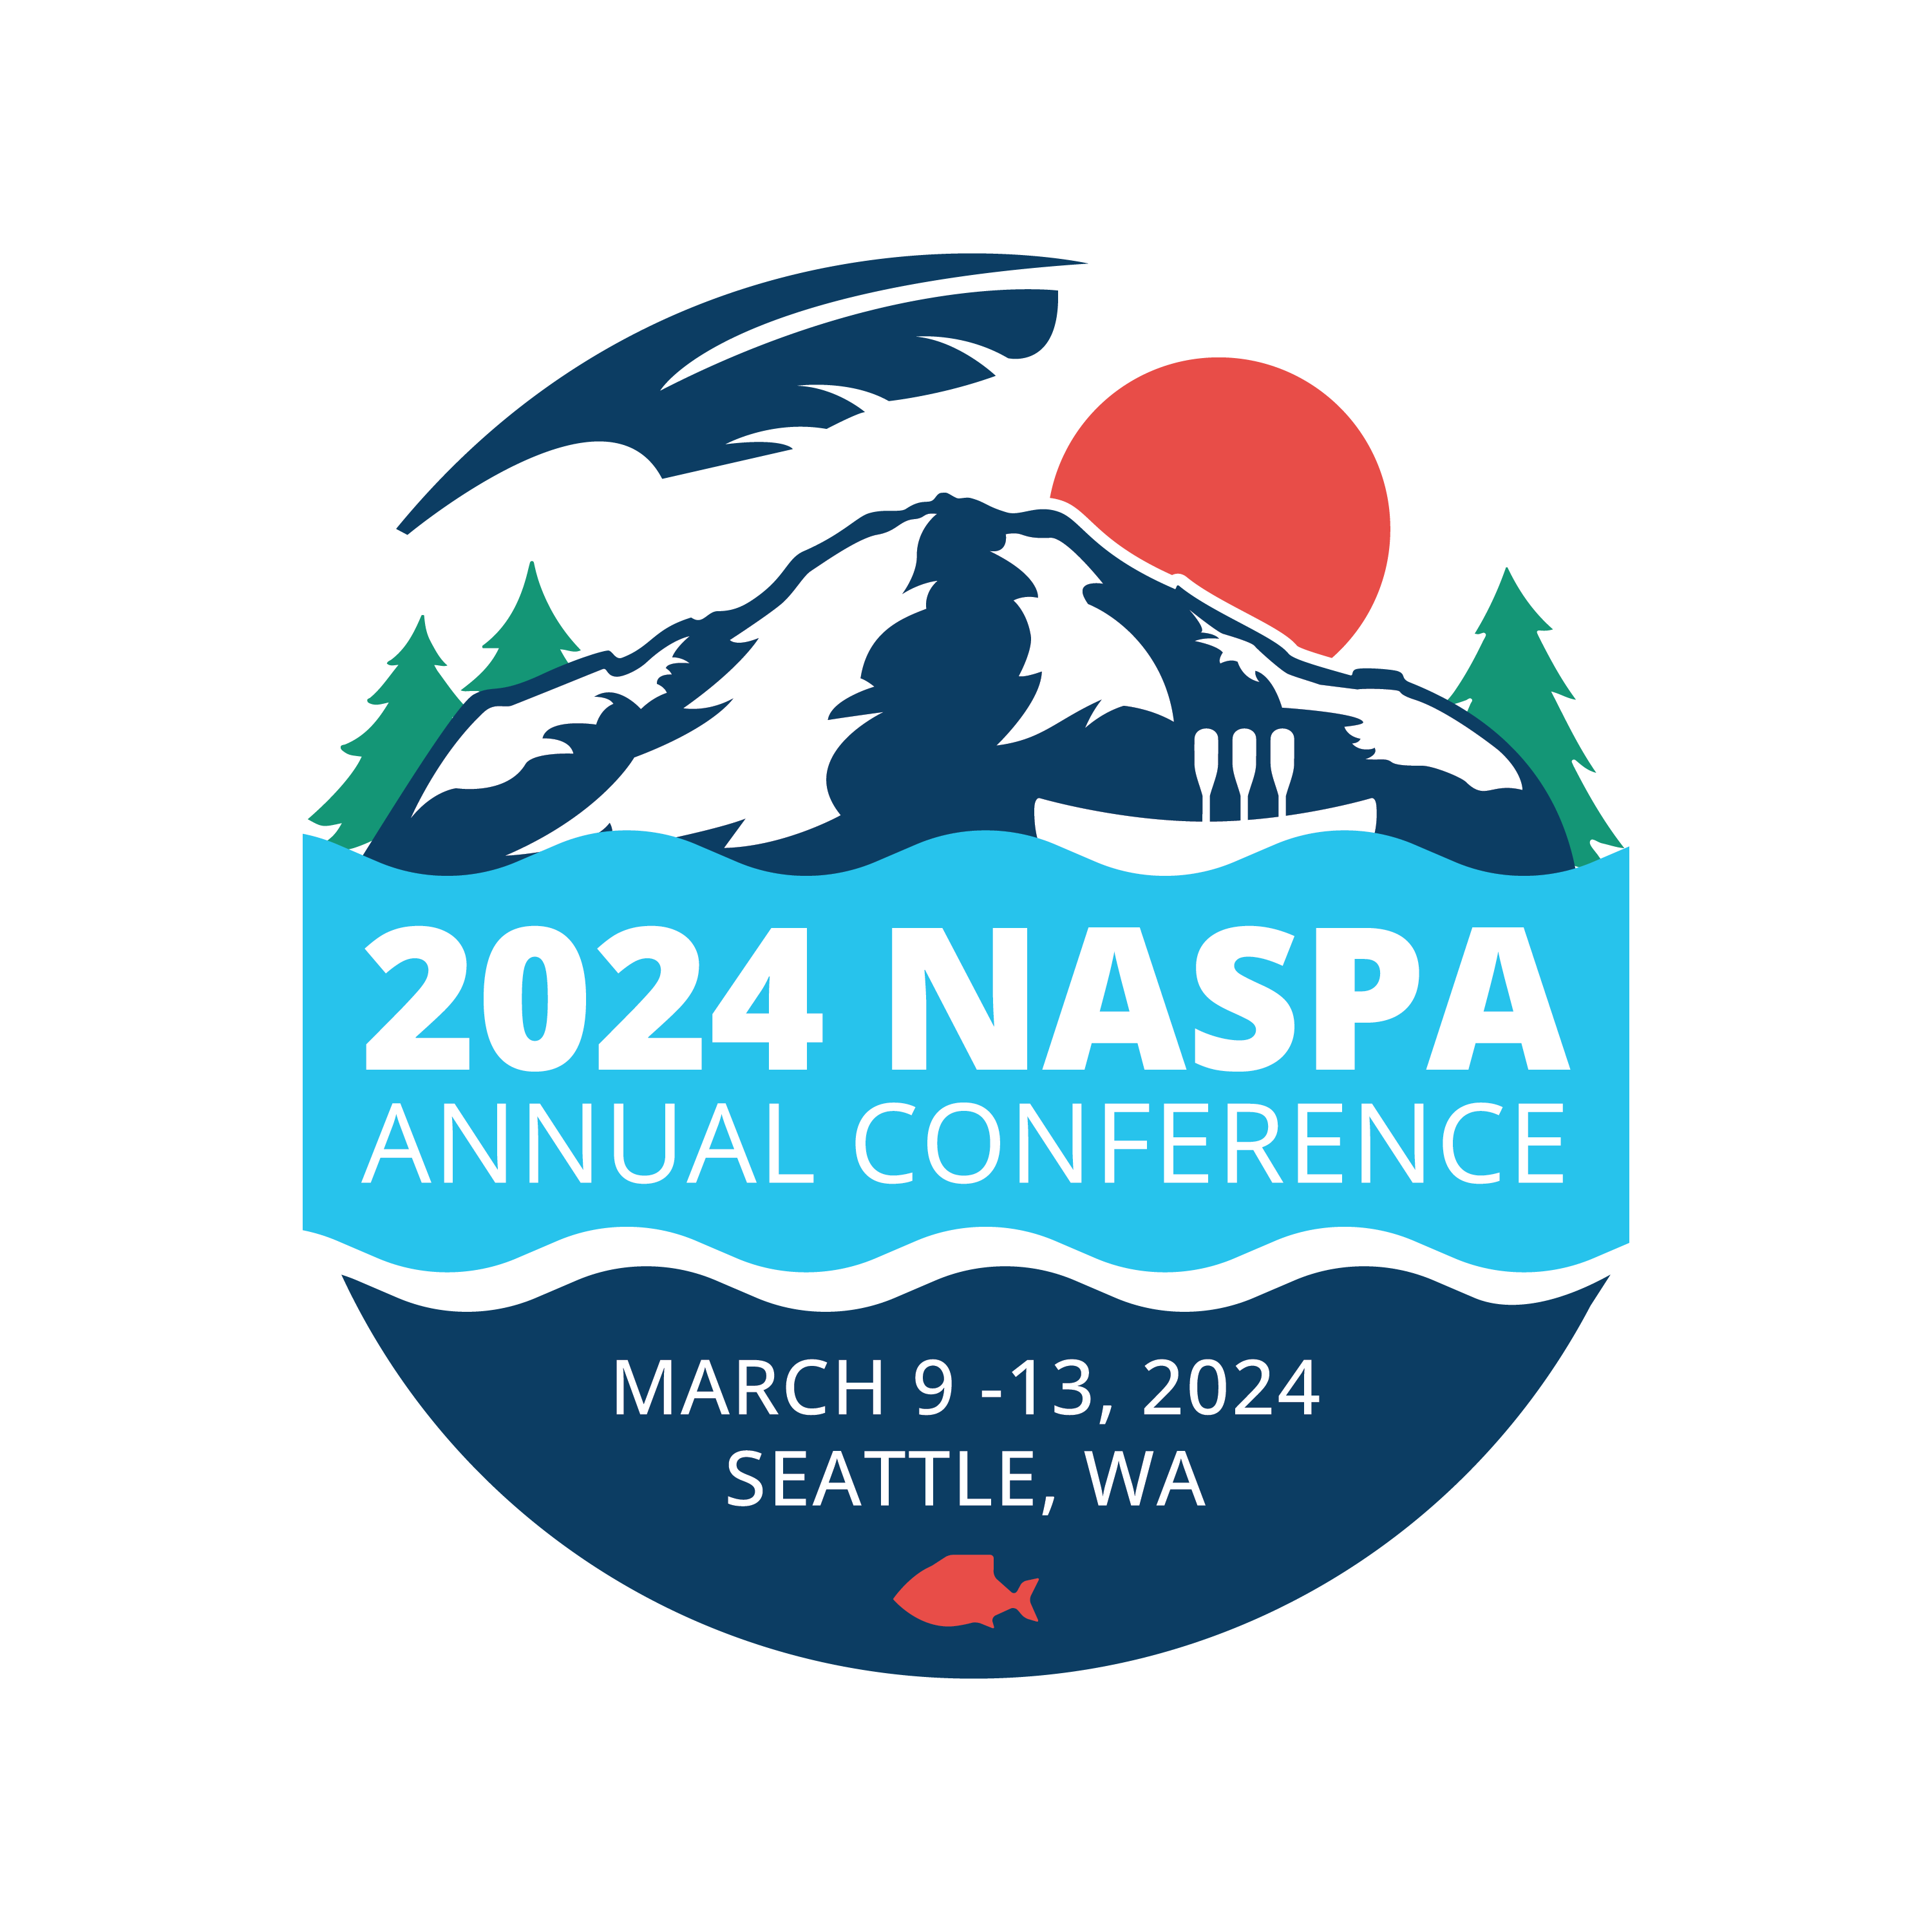 2024 NASPA Annual Conference 2024 NASPA Annual Conference